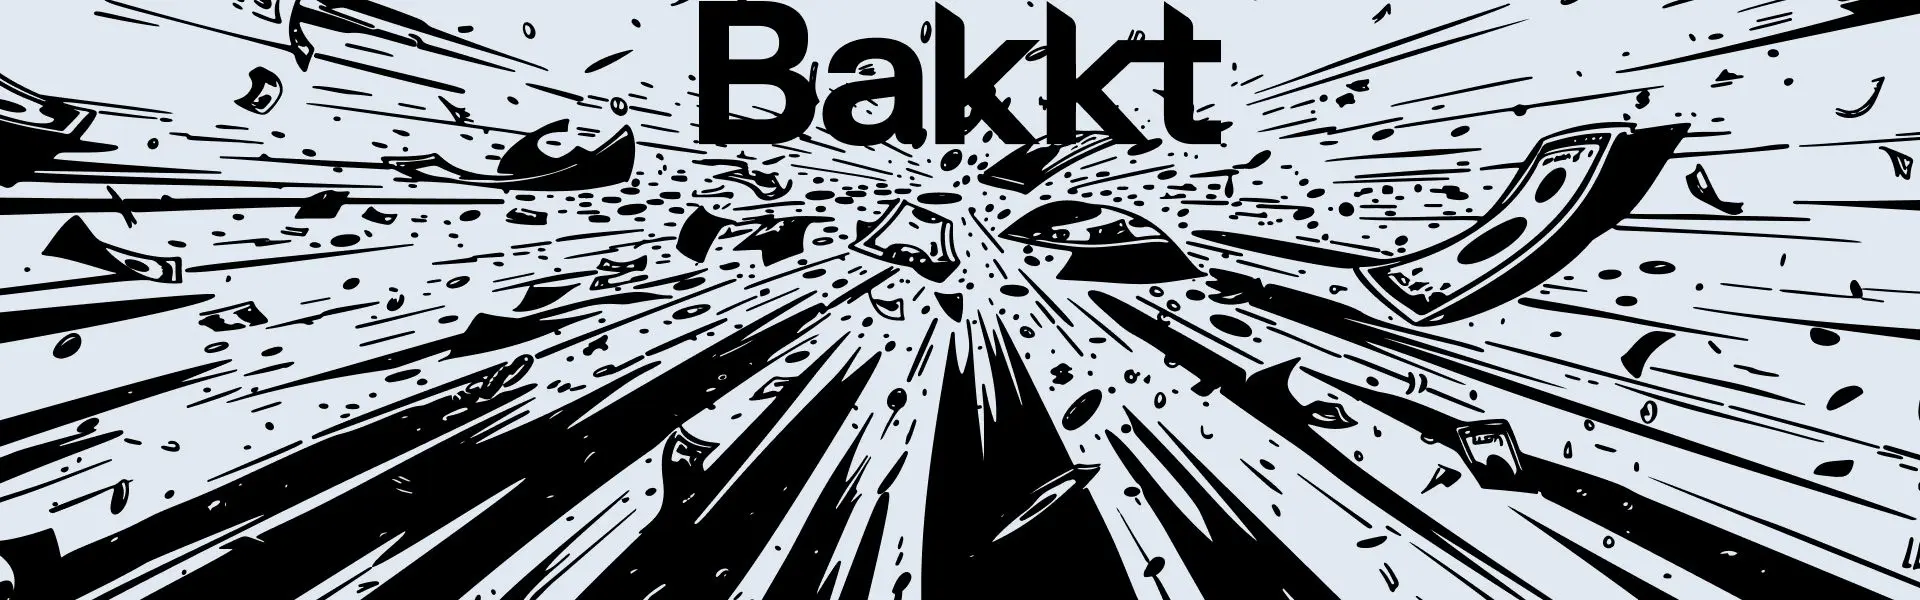 Компанія Bakkt намагається продемонструвати свою здатність.